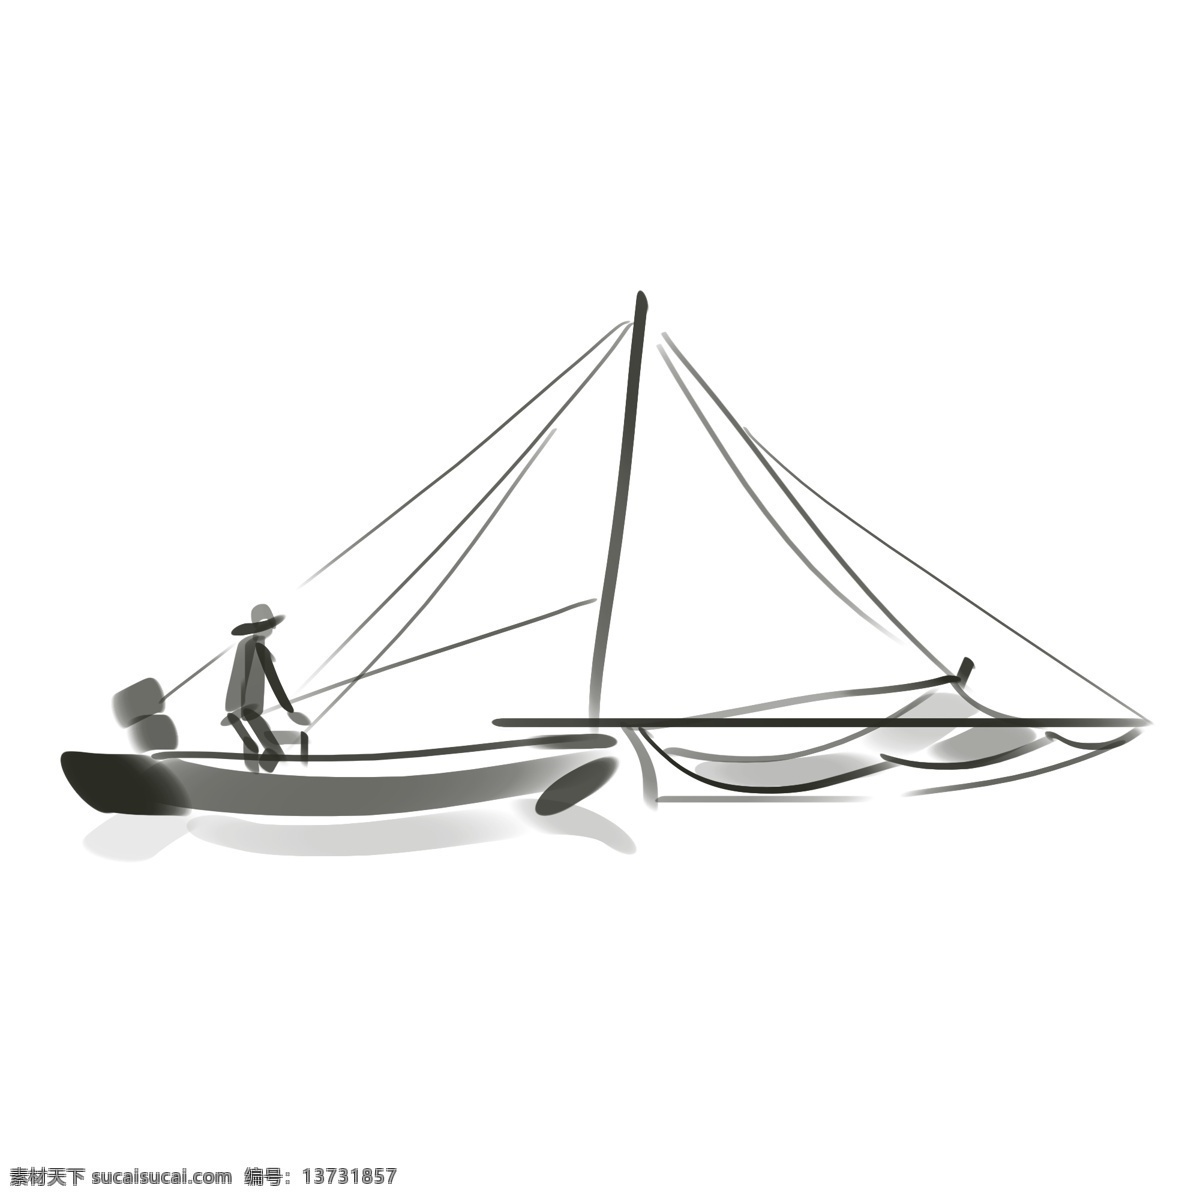 古风 水墨 帆船 插画 水墨船 人物 水面 航行的船只 中国风 墨迹 水墨插画 手绘 船只